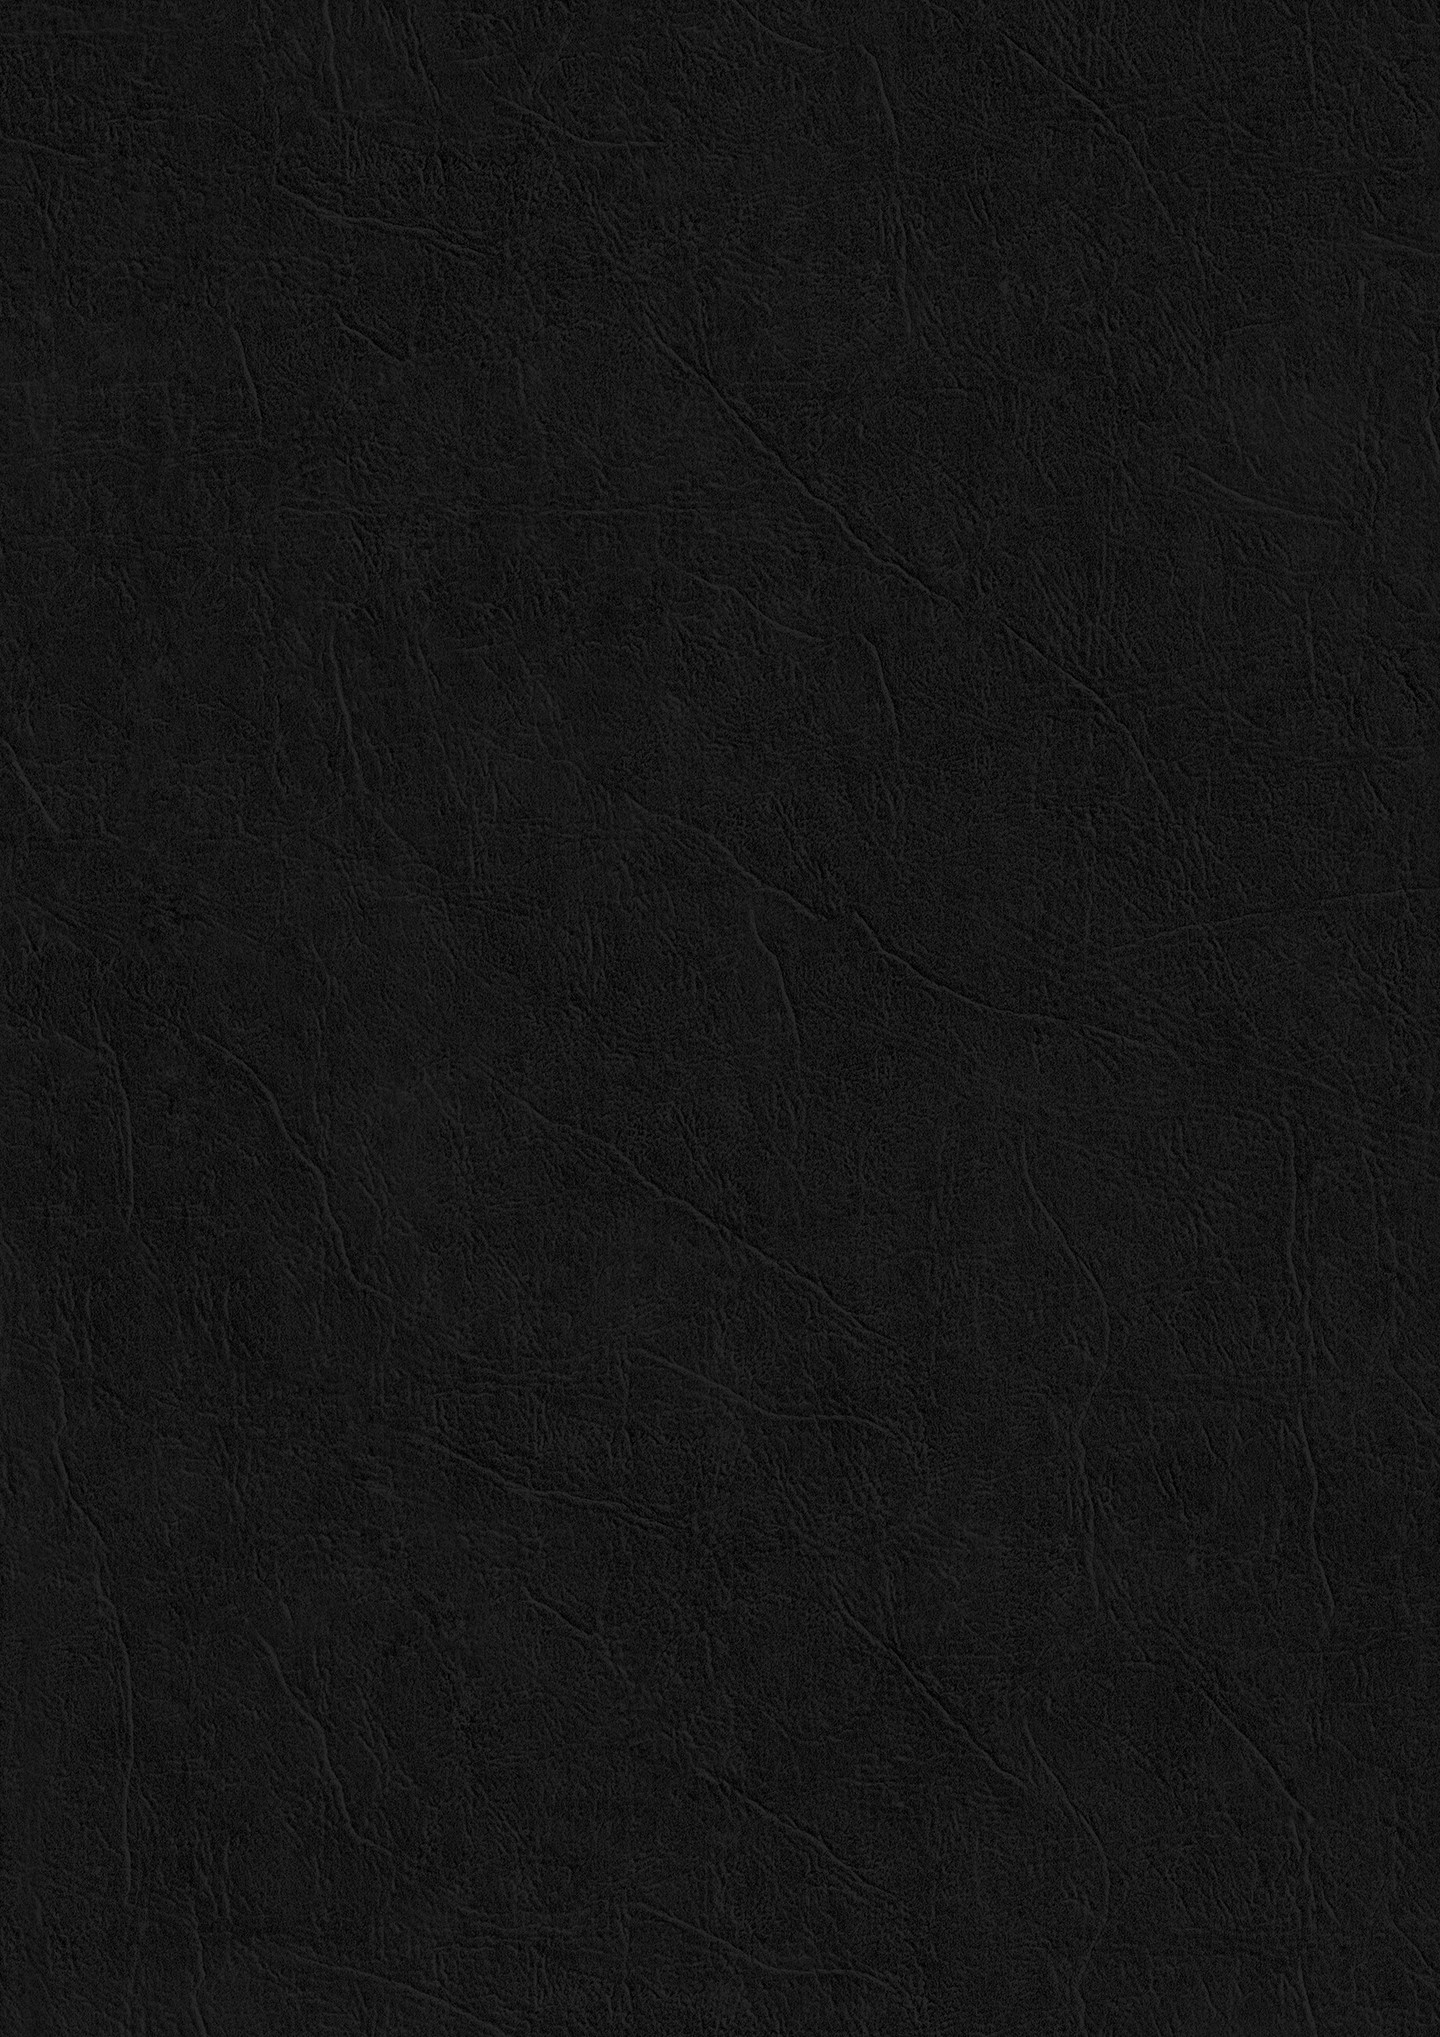 26 Black Paper Texture Backgrounds Black Paper Texture, Paper Texture ...